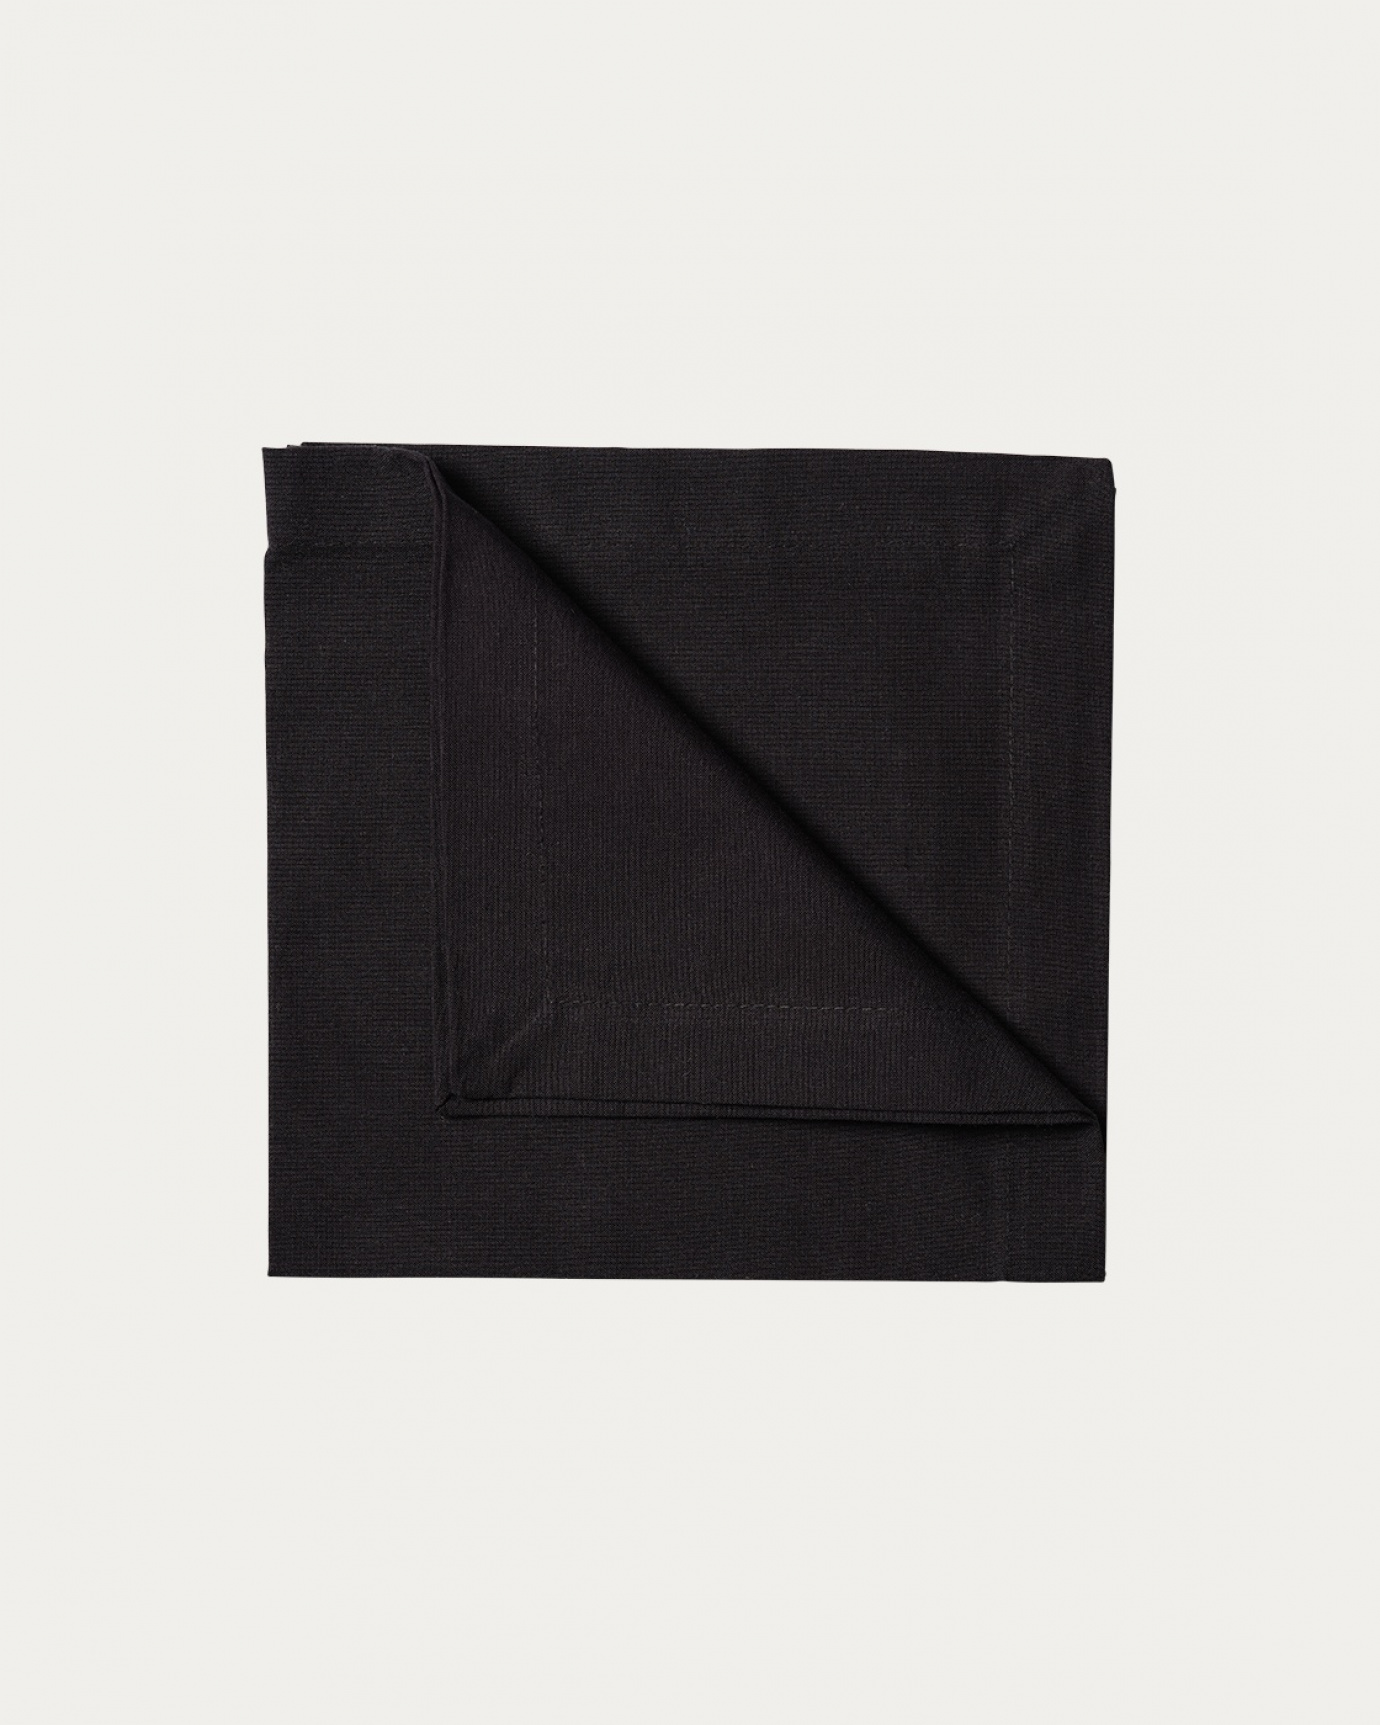 Produktbild schwarz ROBERT Serviette aus weicher Baumwolle von LINUM DESIGN. Größe 45x45 cm und in 4er-Pack verkauft.